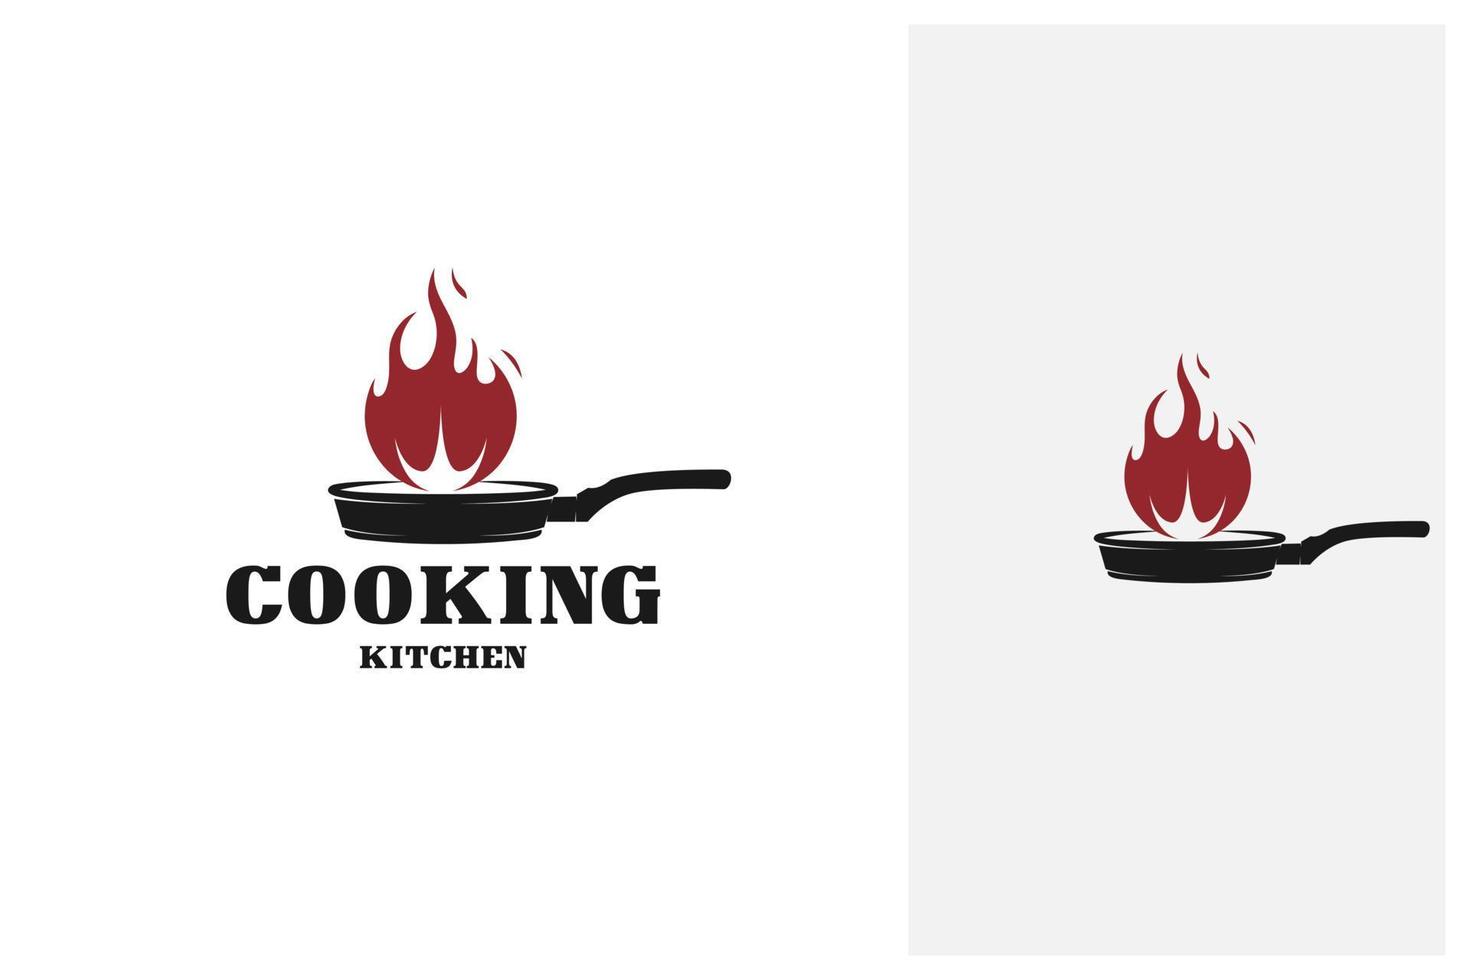 antigua sartén rústica retro de hierro fundido con fuego, logotipo clásico de la cocina del restaurante vector